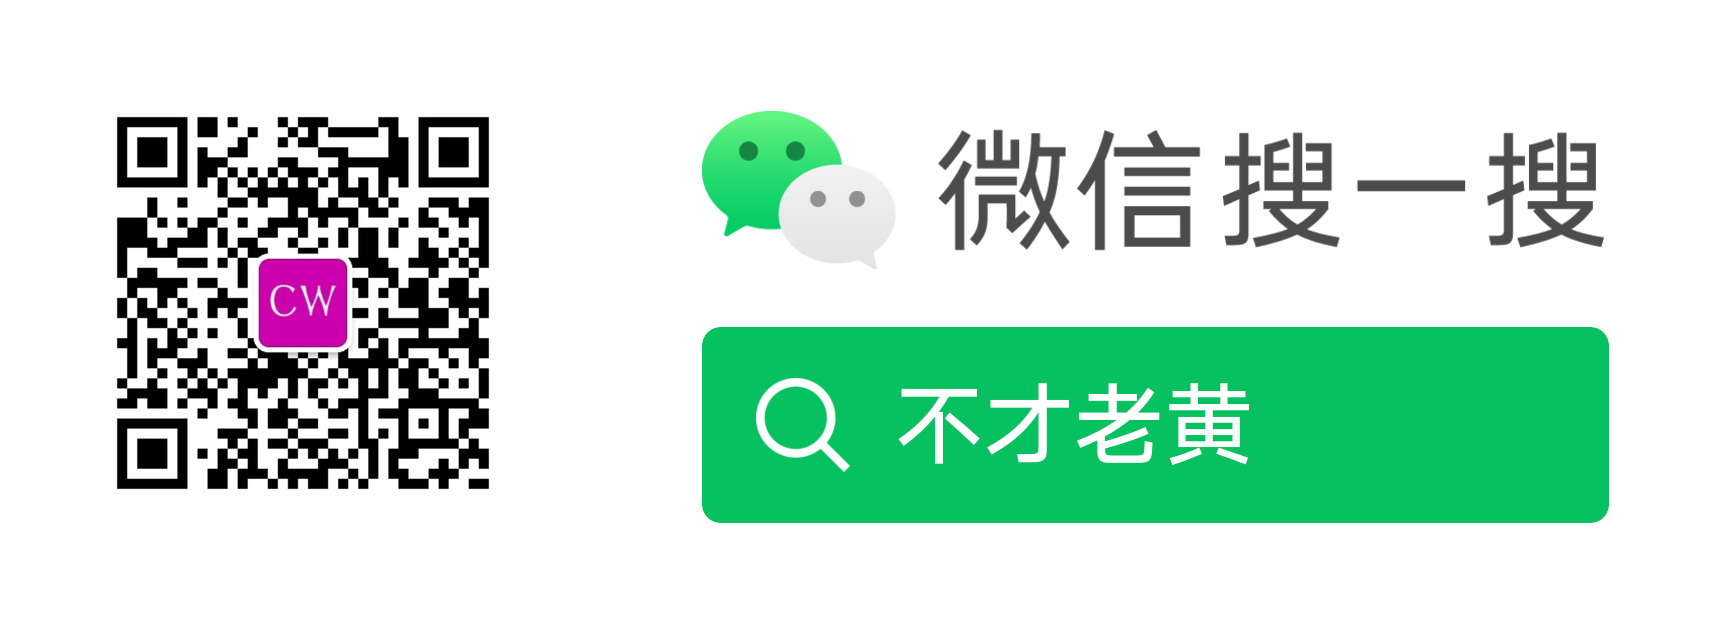 Включи на китайском серая. 微光app.